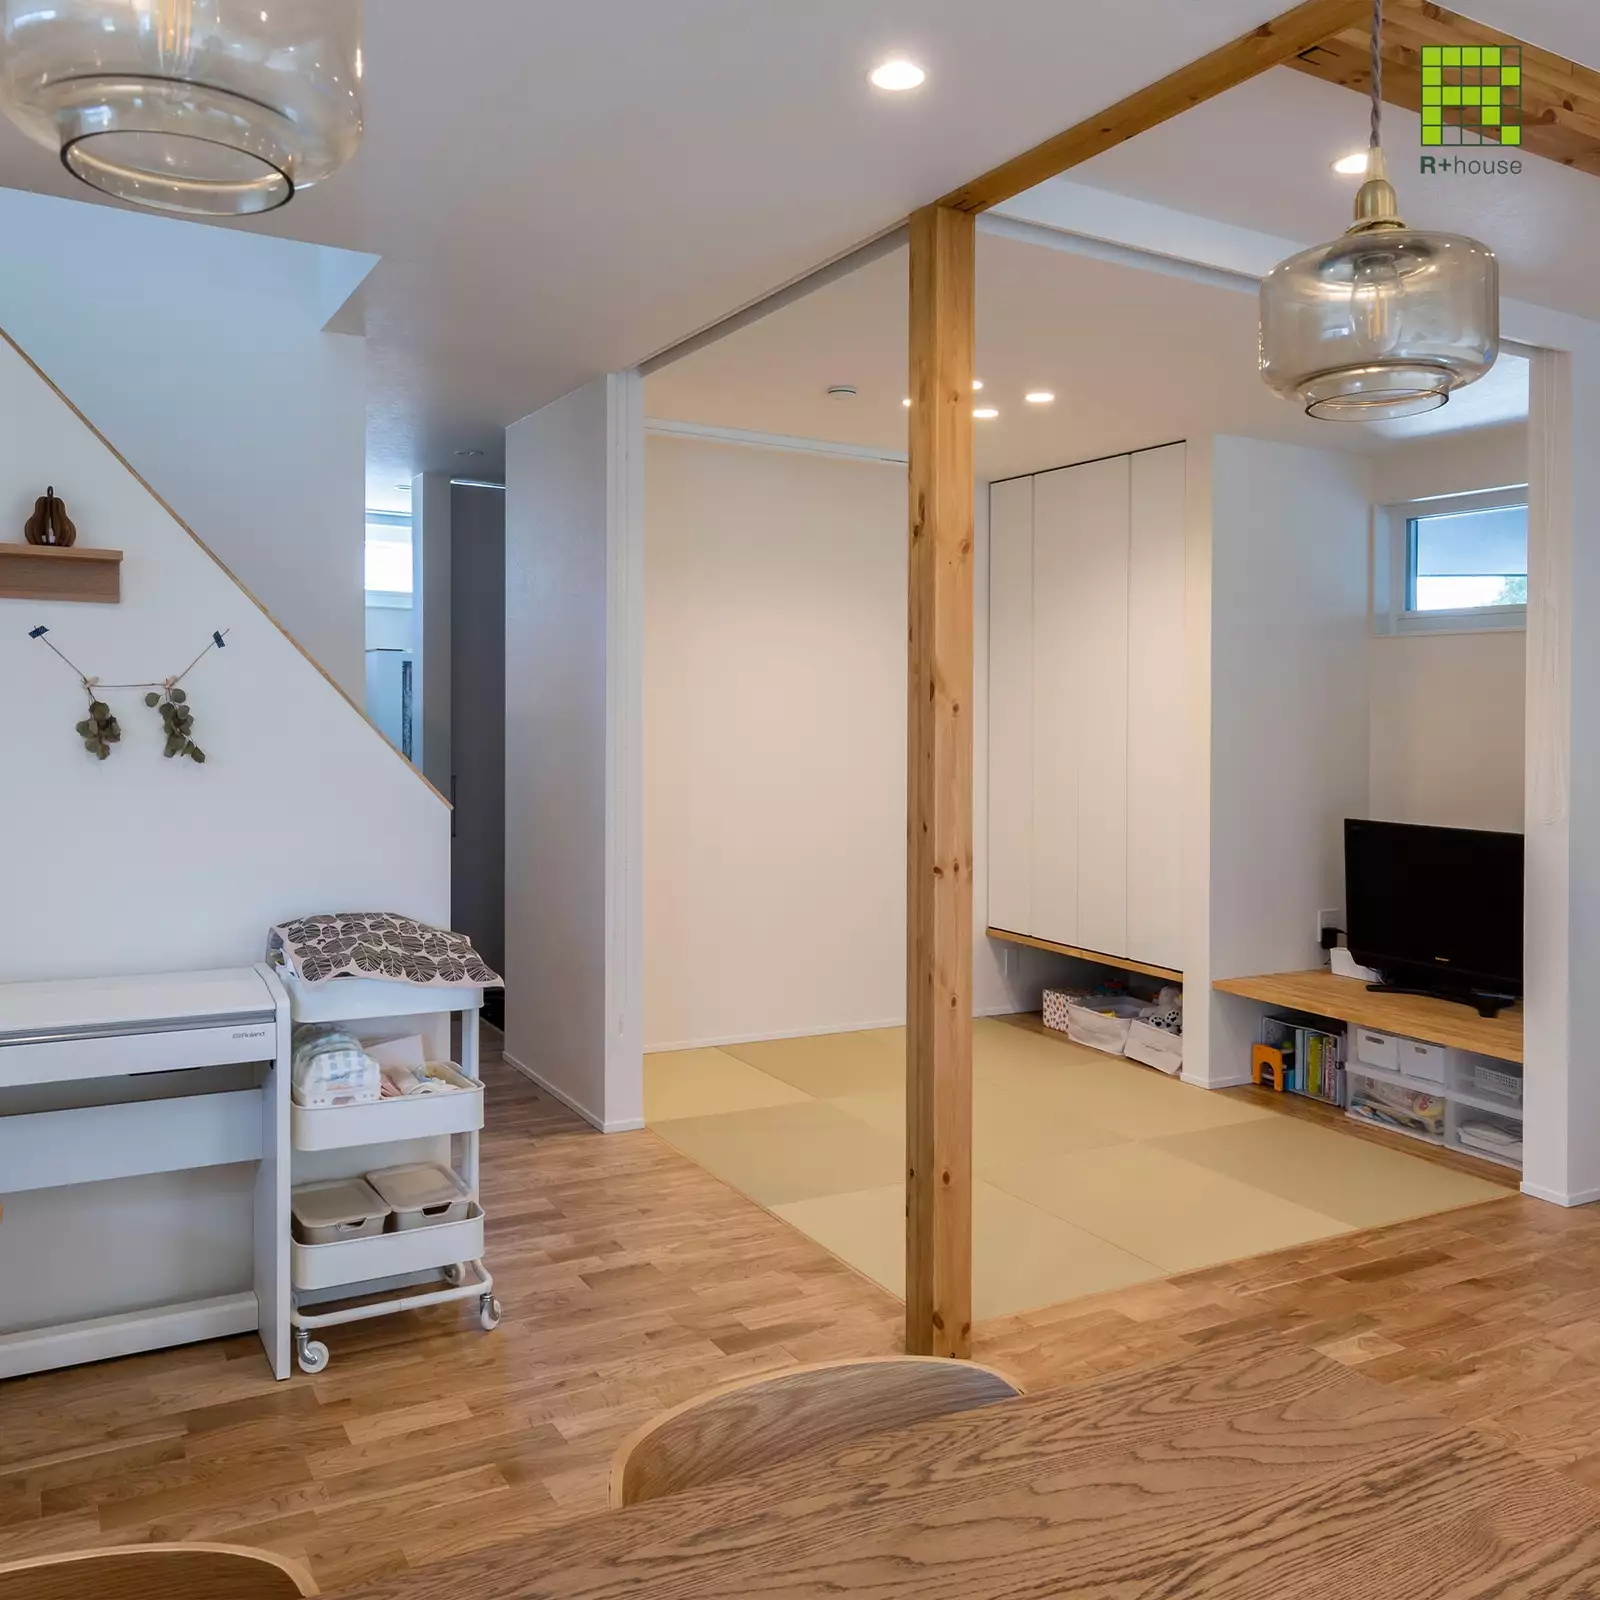 R+houseの物件の畳スペースの写真です。リビングとフラットな畳コーナーはバリアフリーに配慮しています。